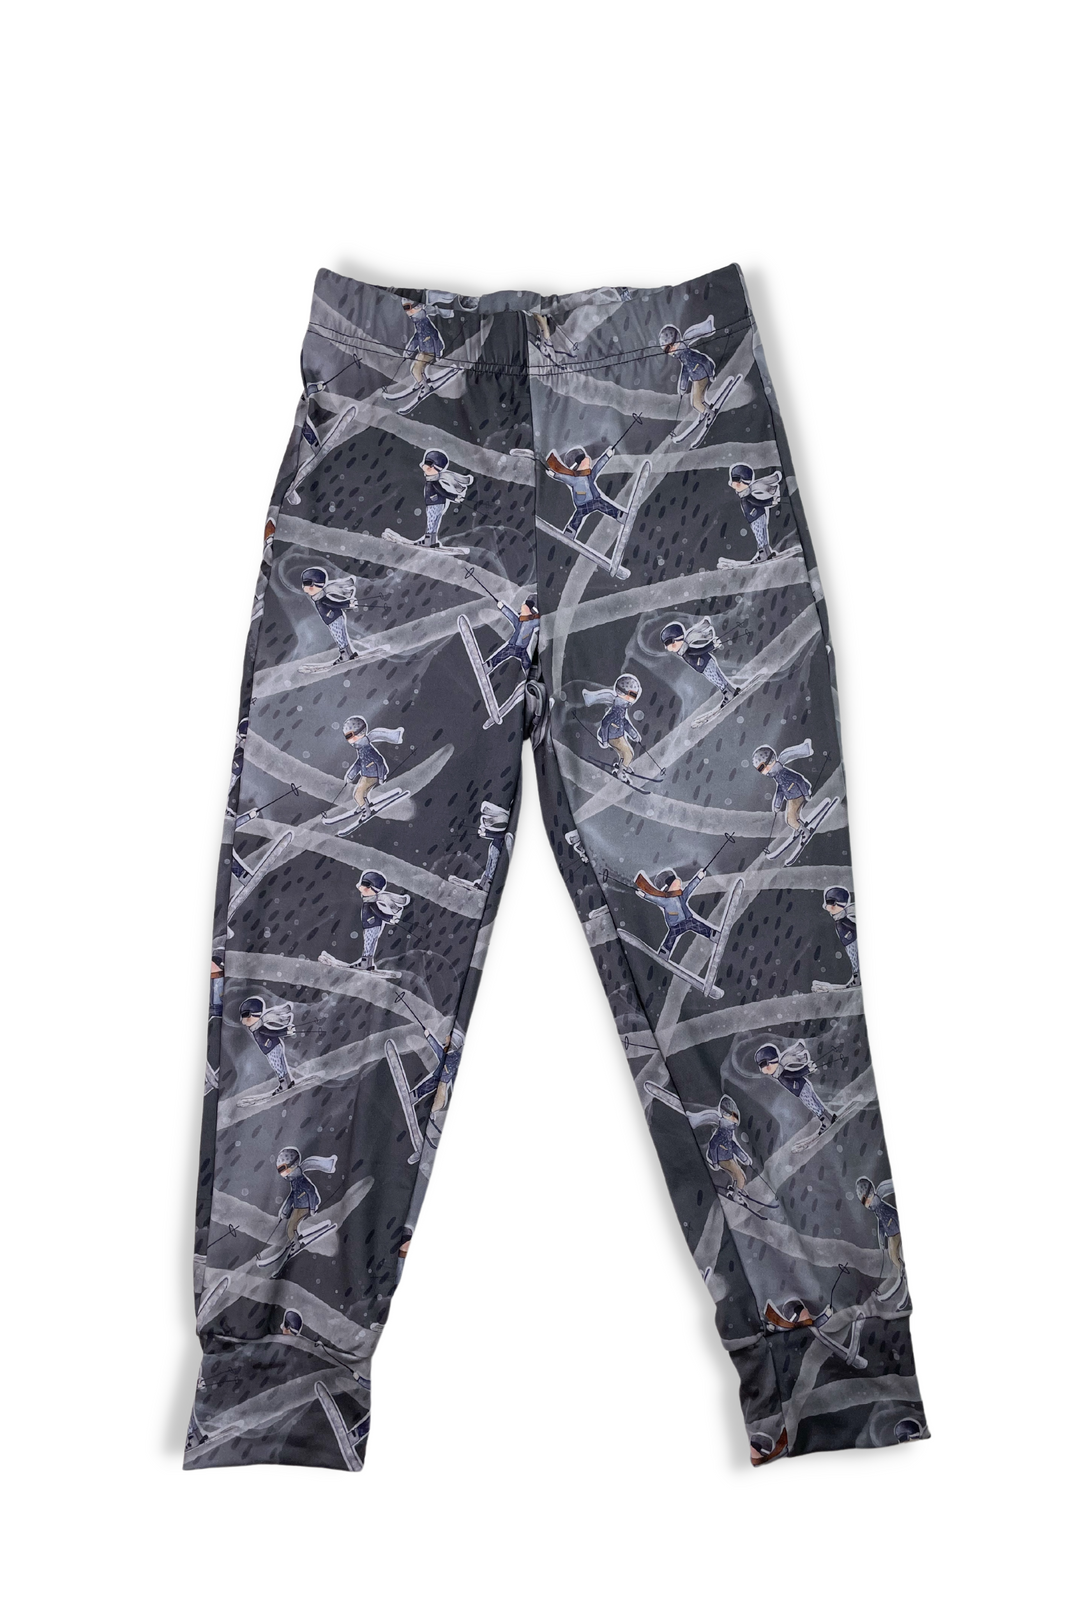 Pyjama pour enfant - Petits Skieurs